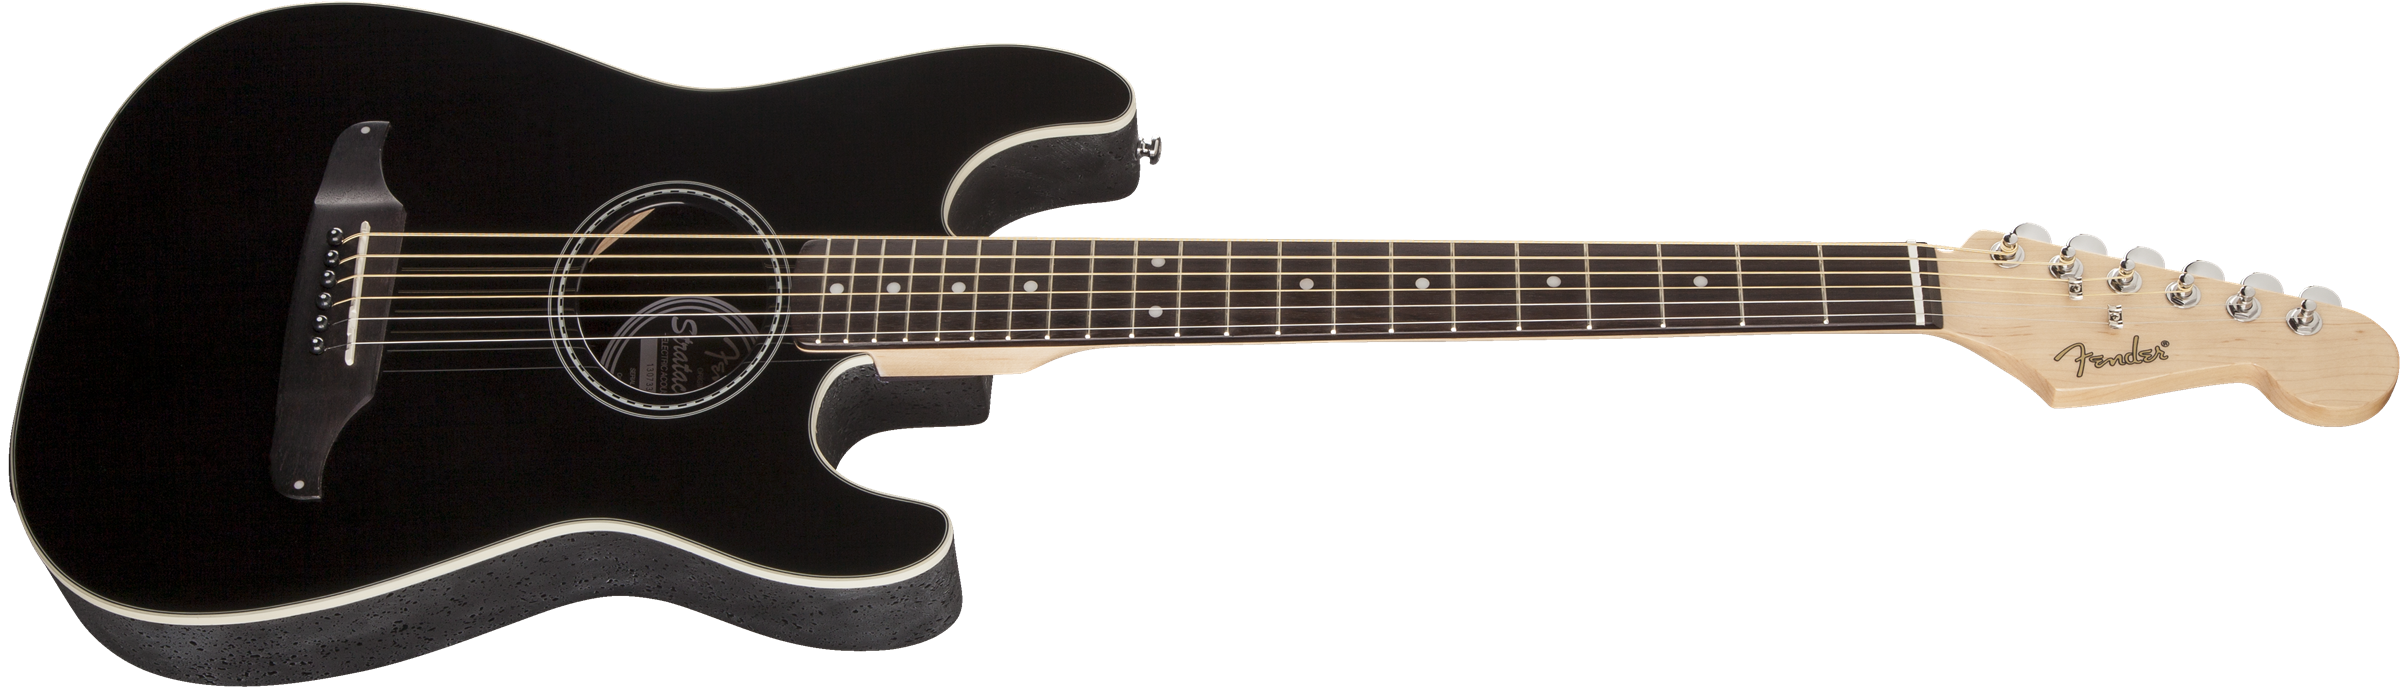 Fender Stratacoustic Standard (wal) - Black - Guitarra acústica & electro - Variation 6